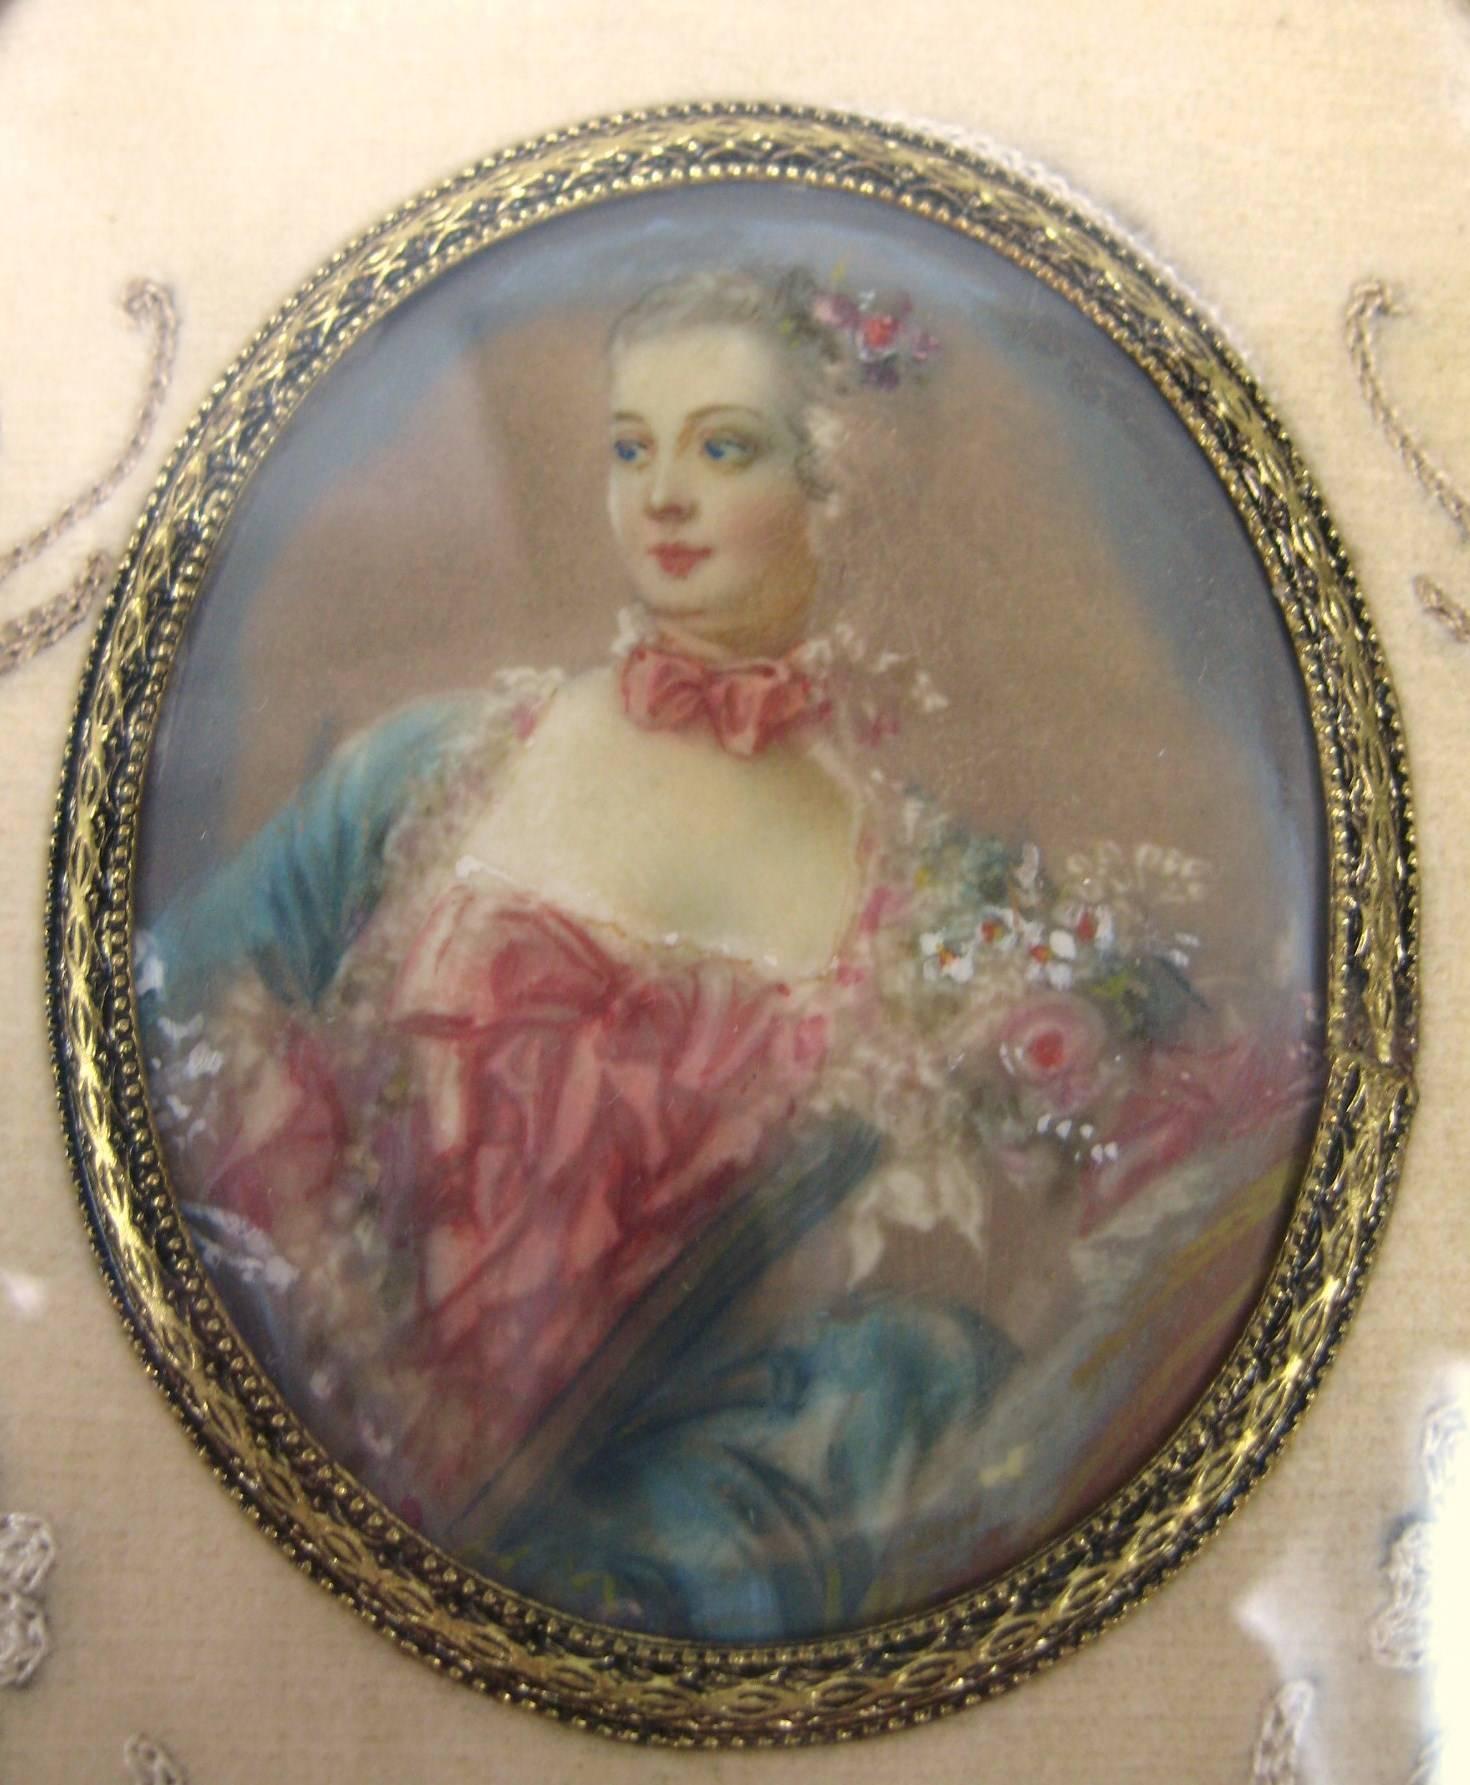 Miniature sous verre du début du XIXe siècle, peinte à la main. Détails finement peints sur cette jolie dame. Dans un cadre ovale en laiton, avec un entourage de broderies florales.
La peinture mesure 2,5 po x 2 po
Le cadre mesure 6,25 in x 3,75